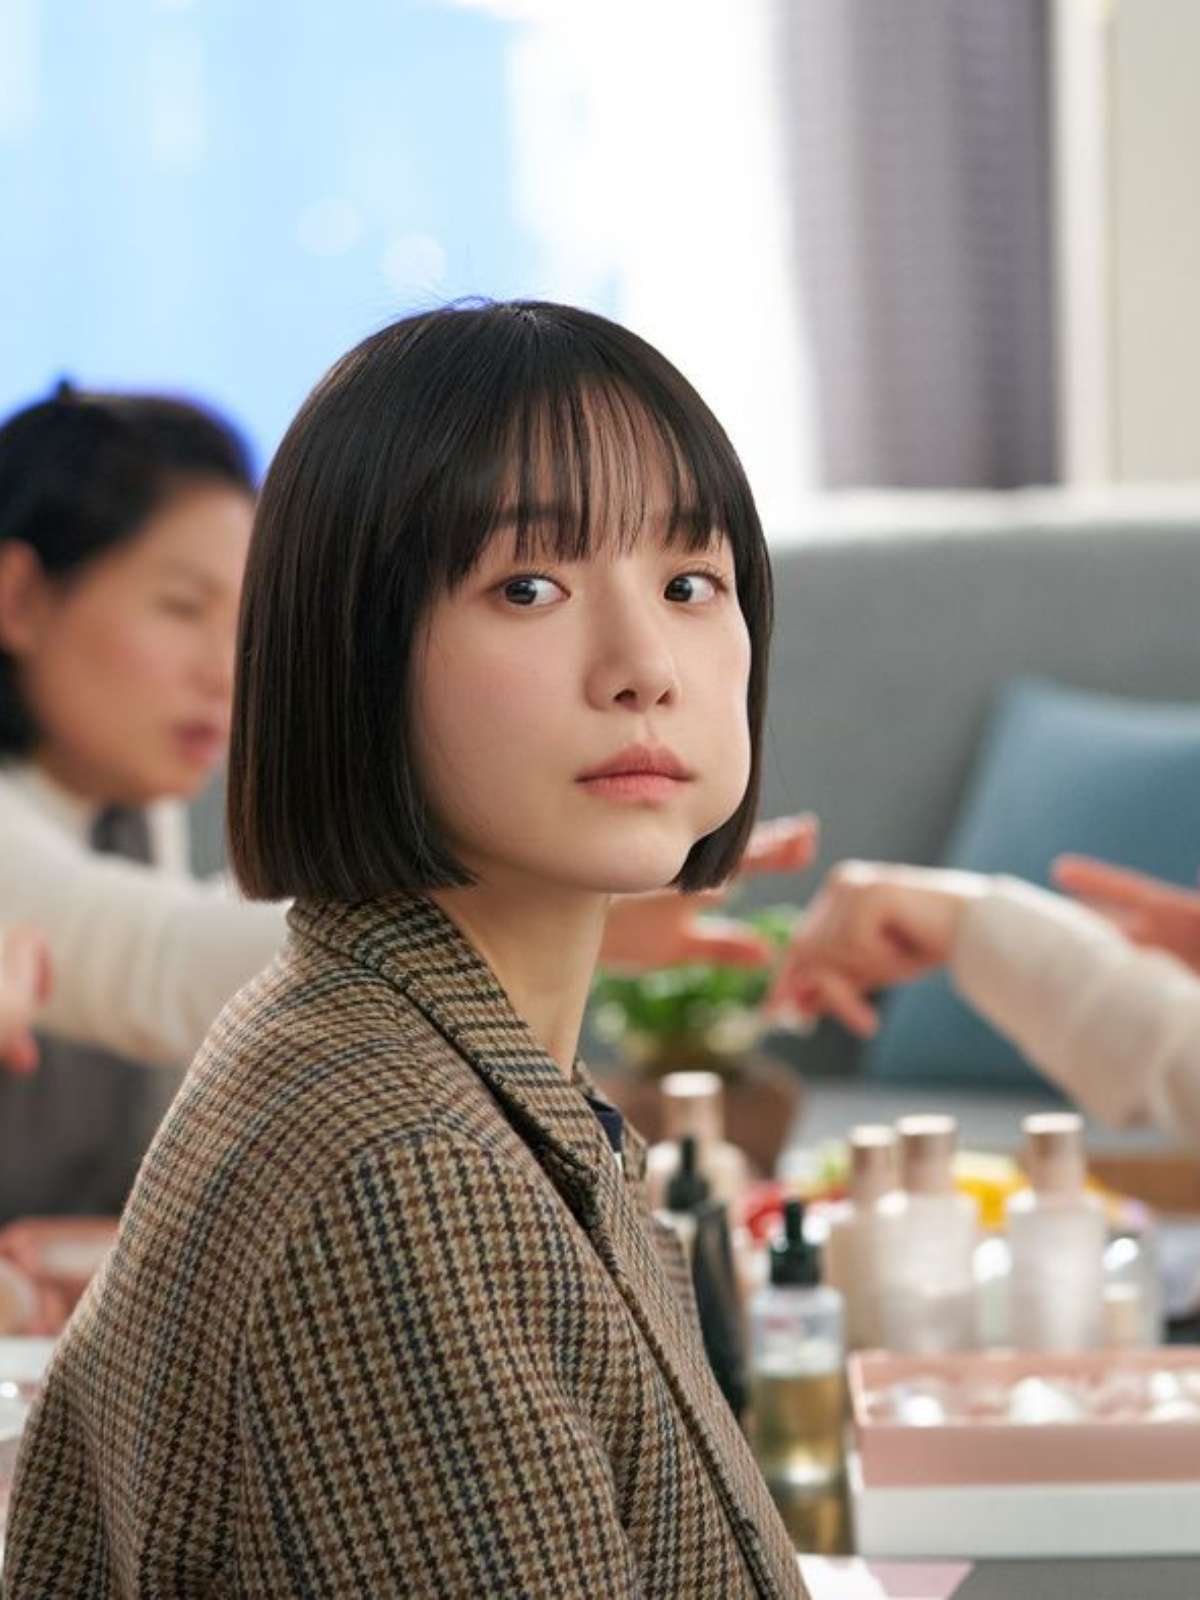 Celebrity: do que se trata o novo dorama coreano da Netflix?